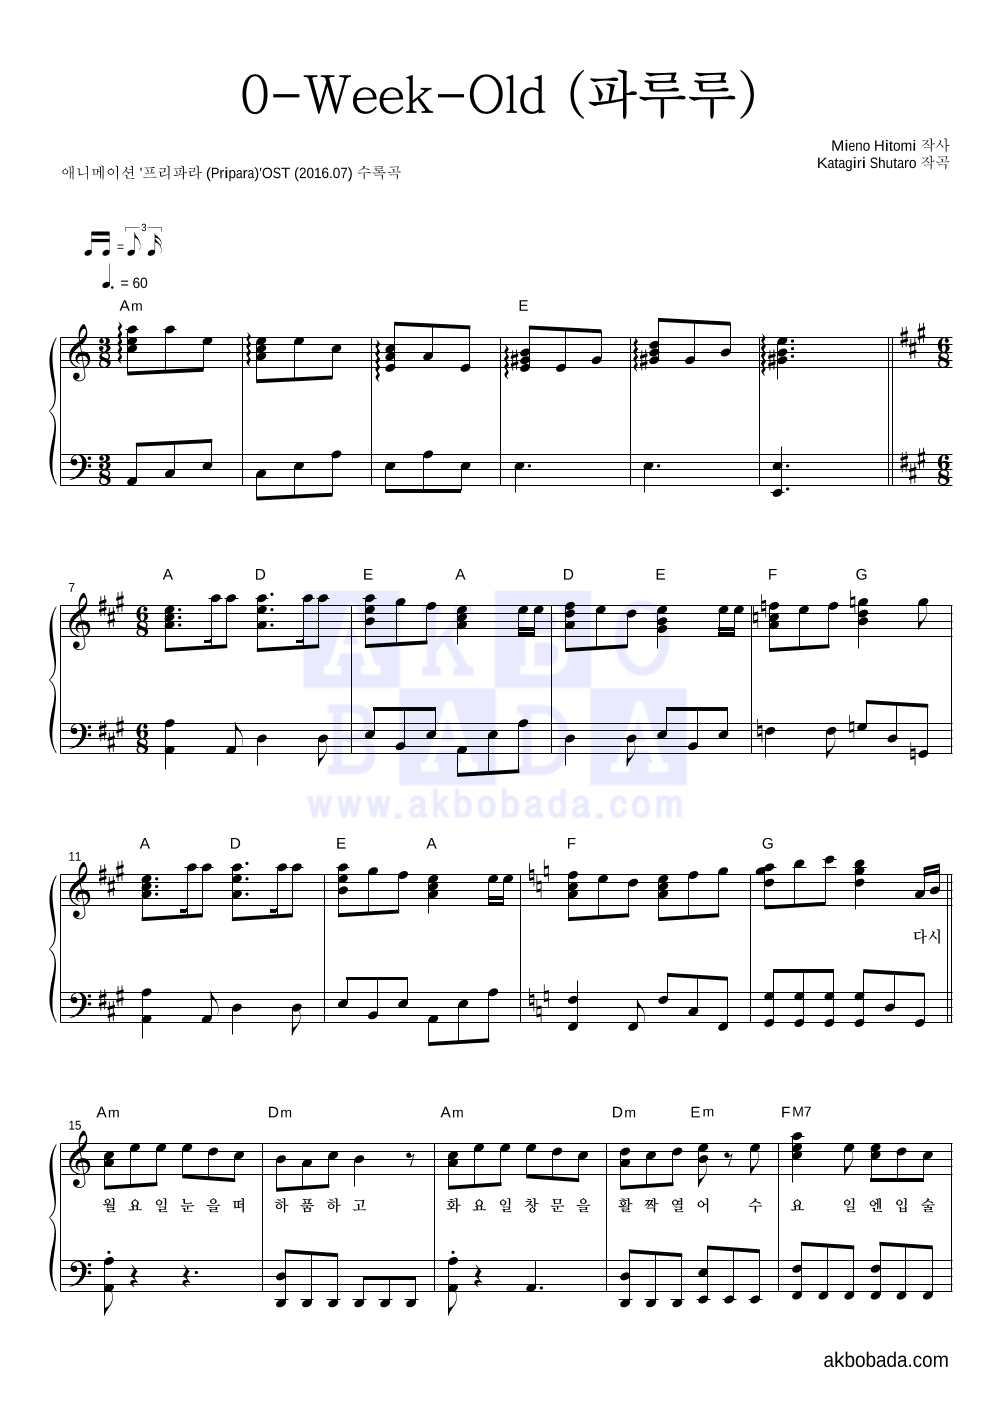 프리파라 OST - 0-Week-Old (파루루) 피아노 2단 악보 